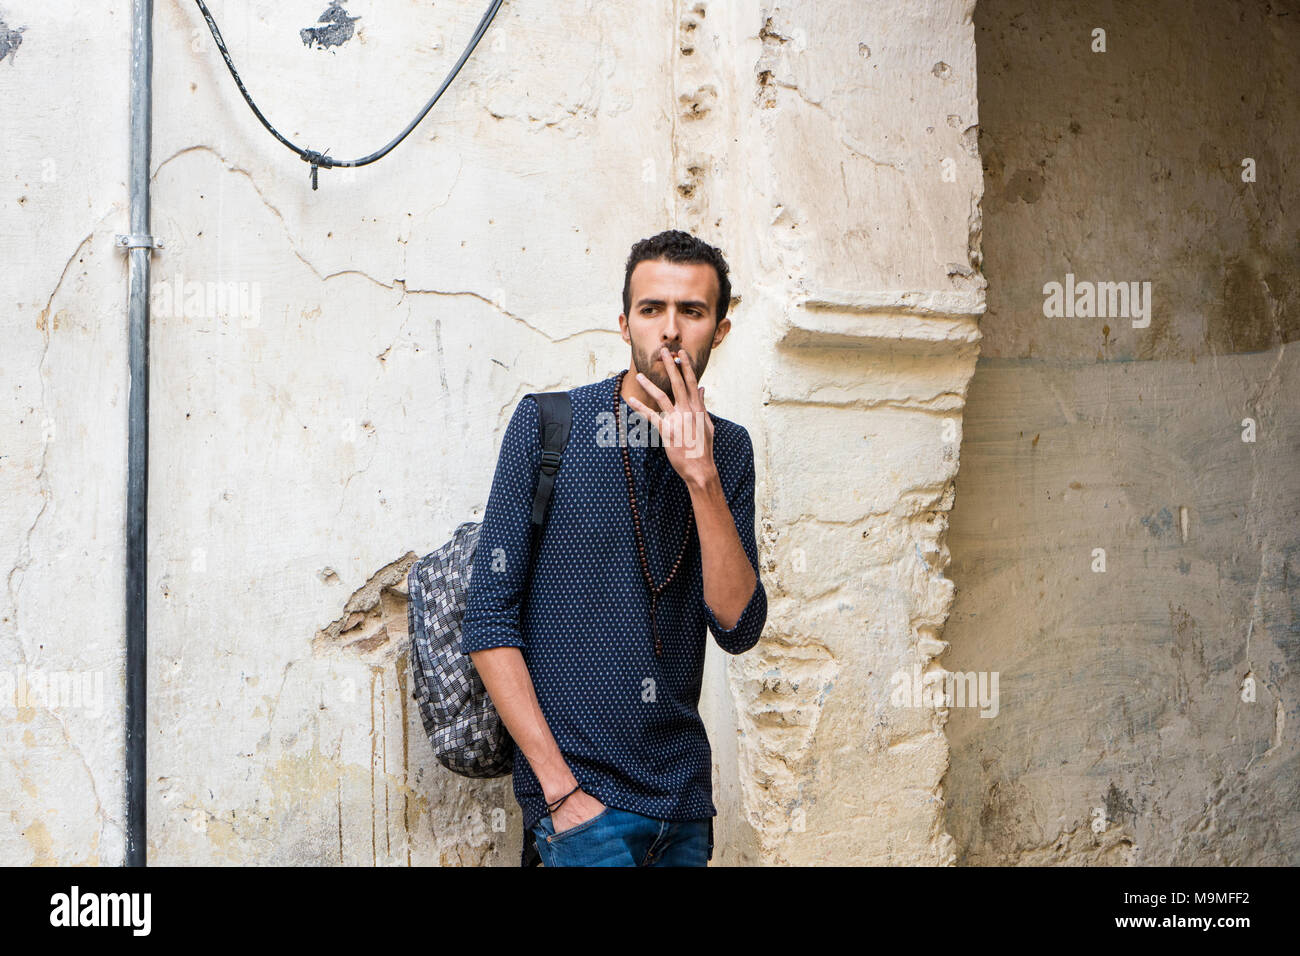 Junge muslimische Mann Rauchen einer Zigarette in Freizeitkleidung stehend durch die zerstörte Wand Stockfoto